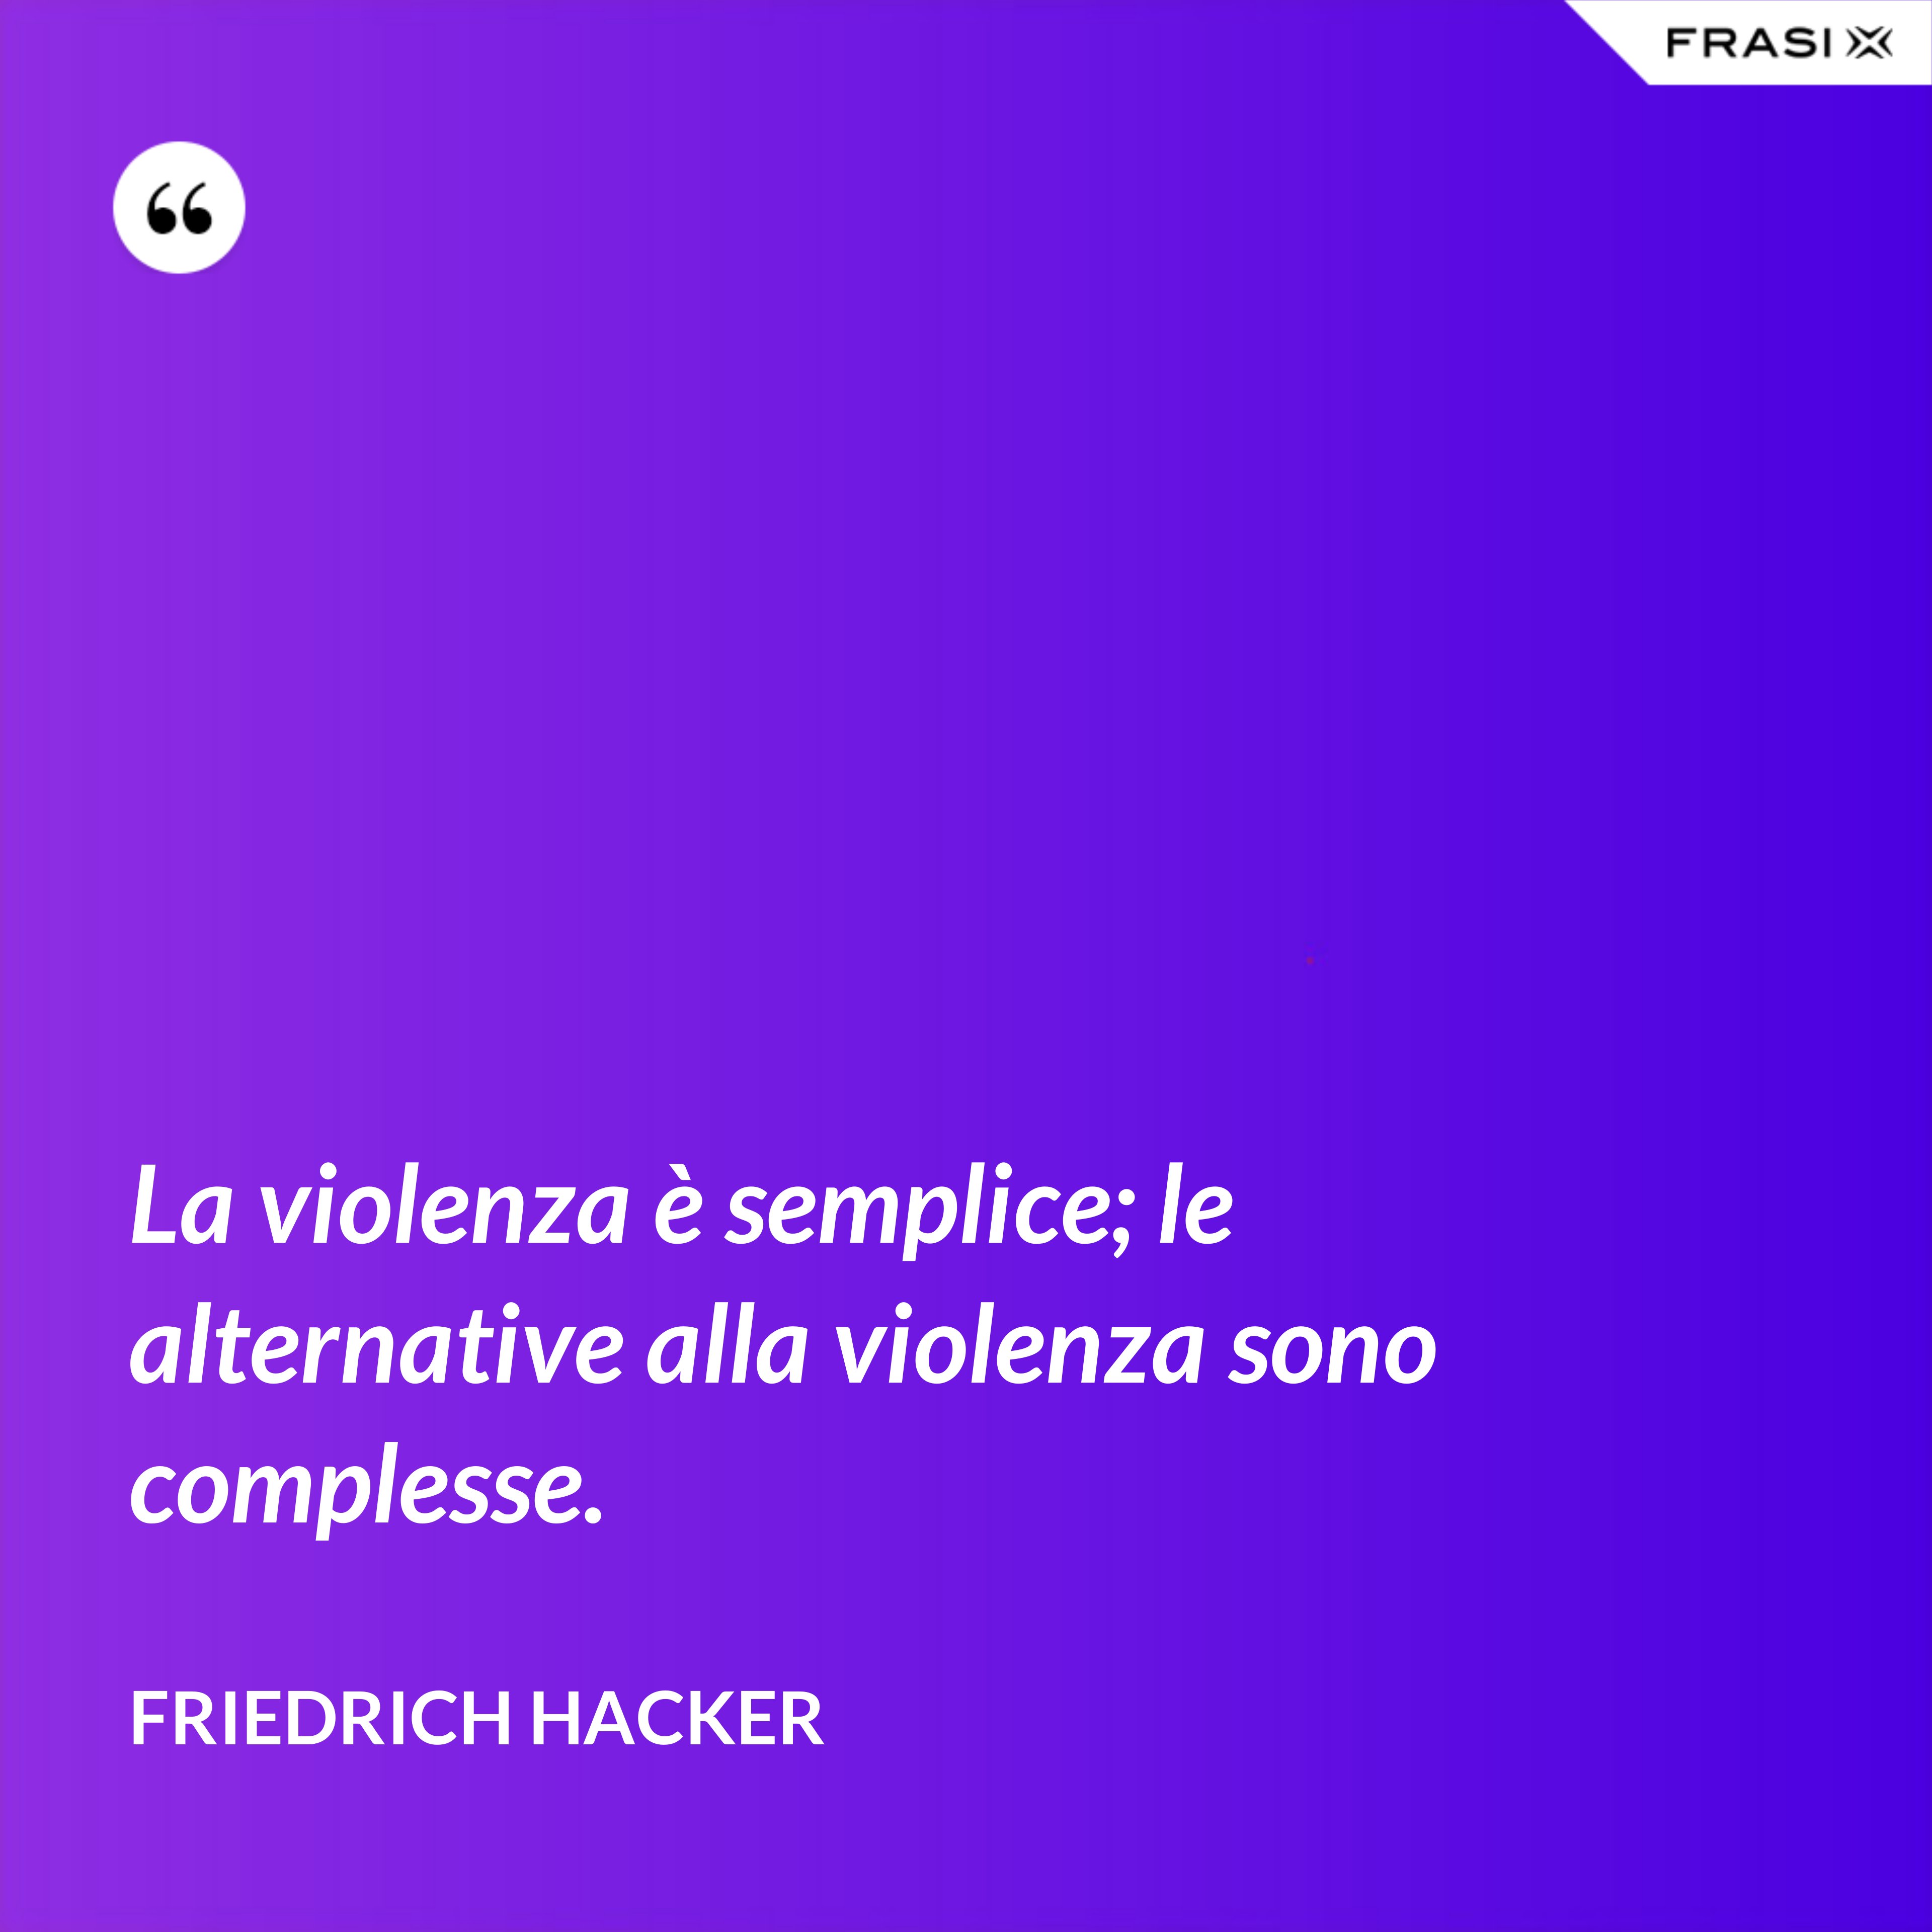 La violenza è semplice; le alternative alla violenza sono complesse. - Friedrich Hacker